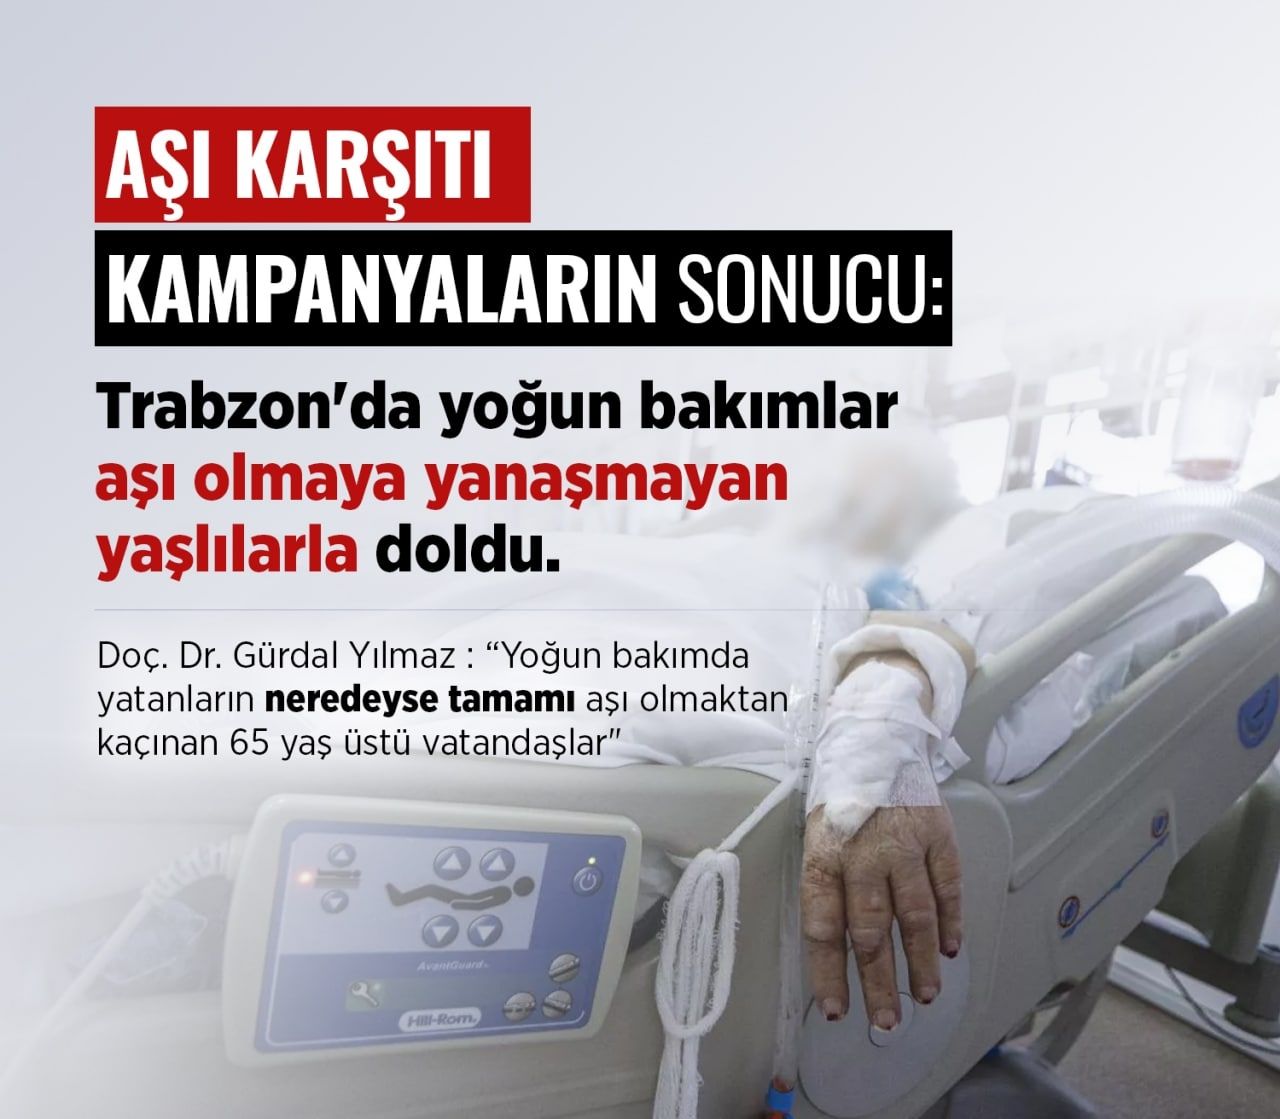 Trabzon’da yoğun bakımlar aşı olmayan yaşlılarla dolu